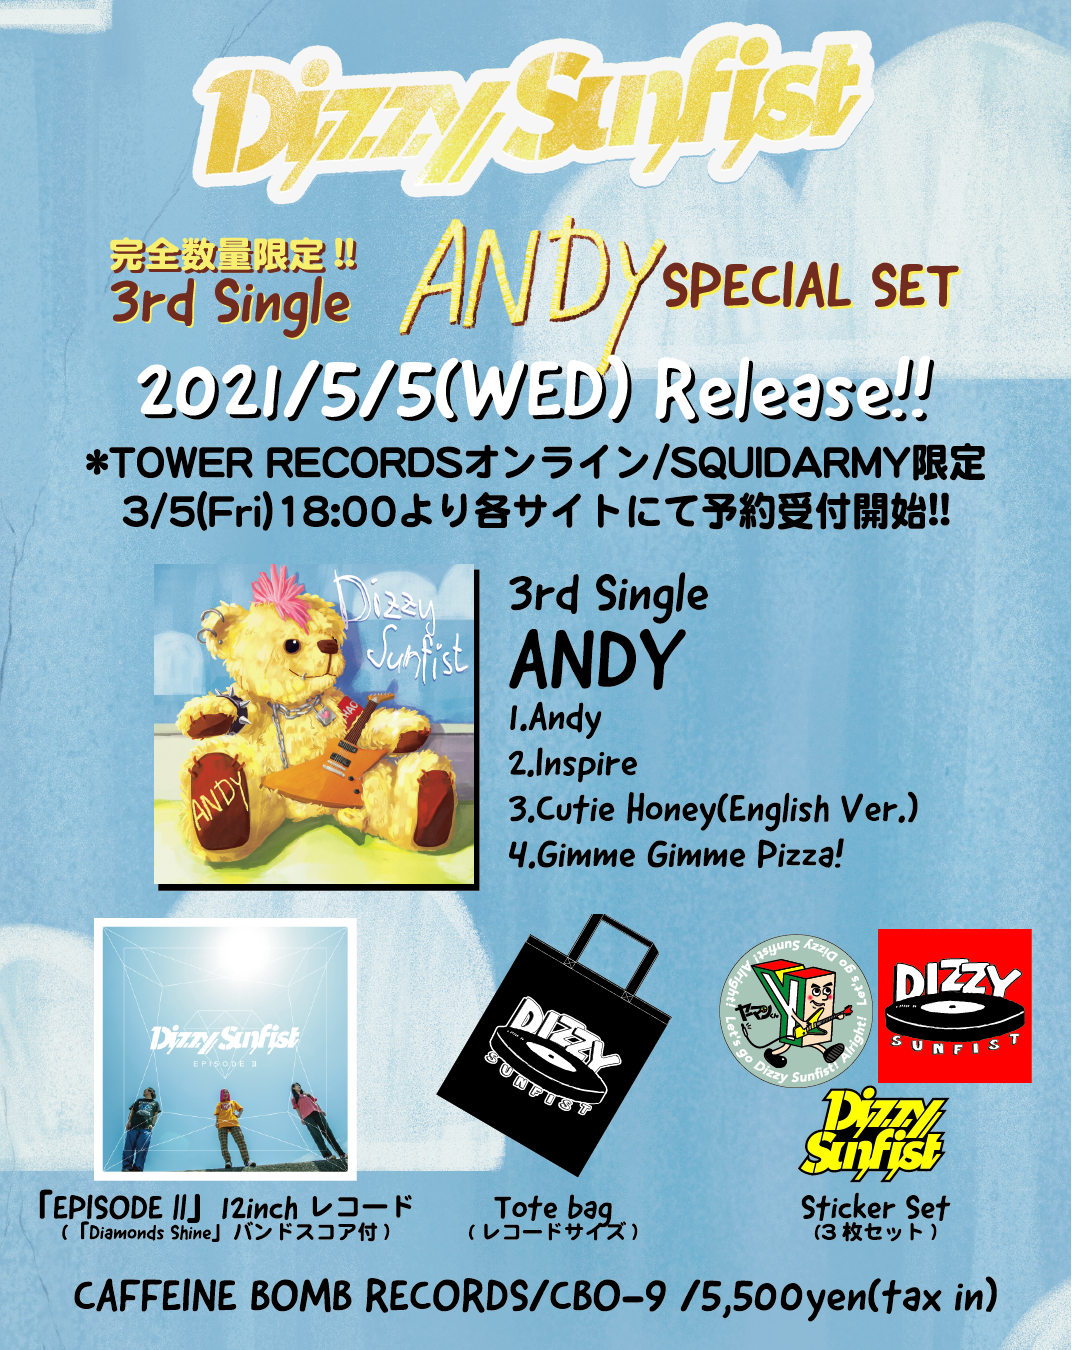 完全数量限定版 3rd Single Andy Special Set リリース決定 Dizzy Sunfist Official Web Site